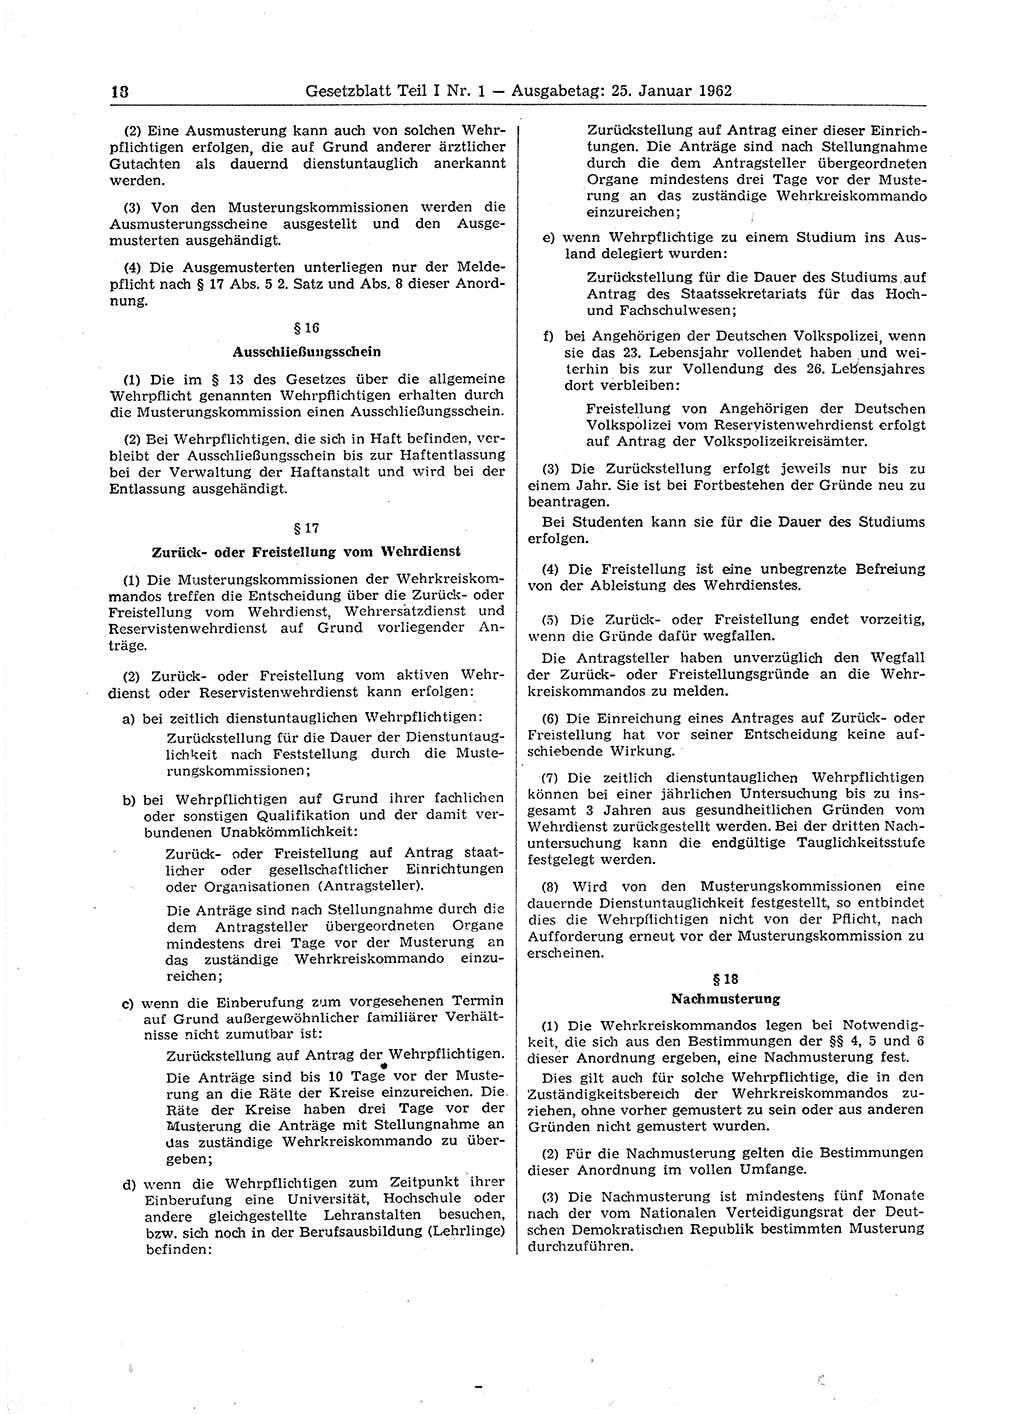 Gesetzblatt (GBl.) der Deutschen Demokratischen Republik (DDR) Teil Ⅰ 1962, Seite 18 (GBl. DDR Ⅰ 1962, S. 18)